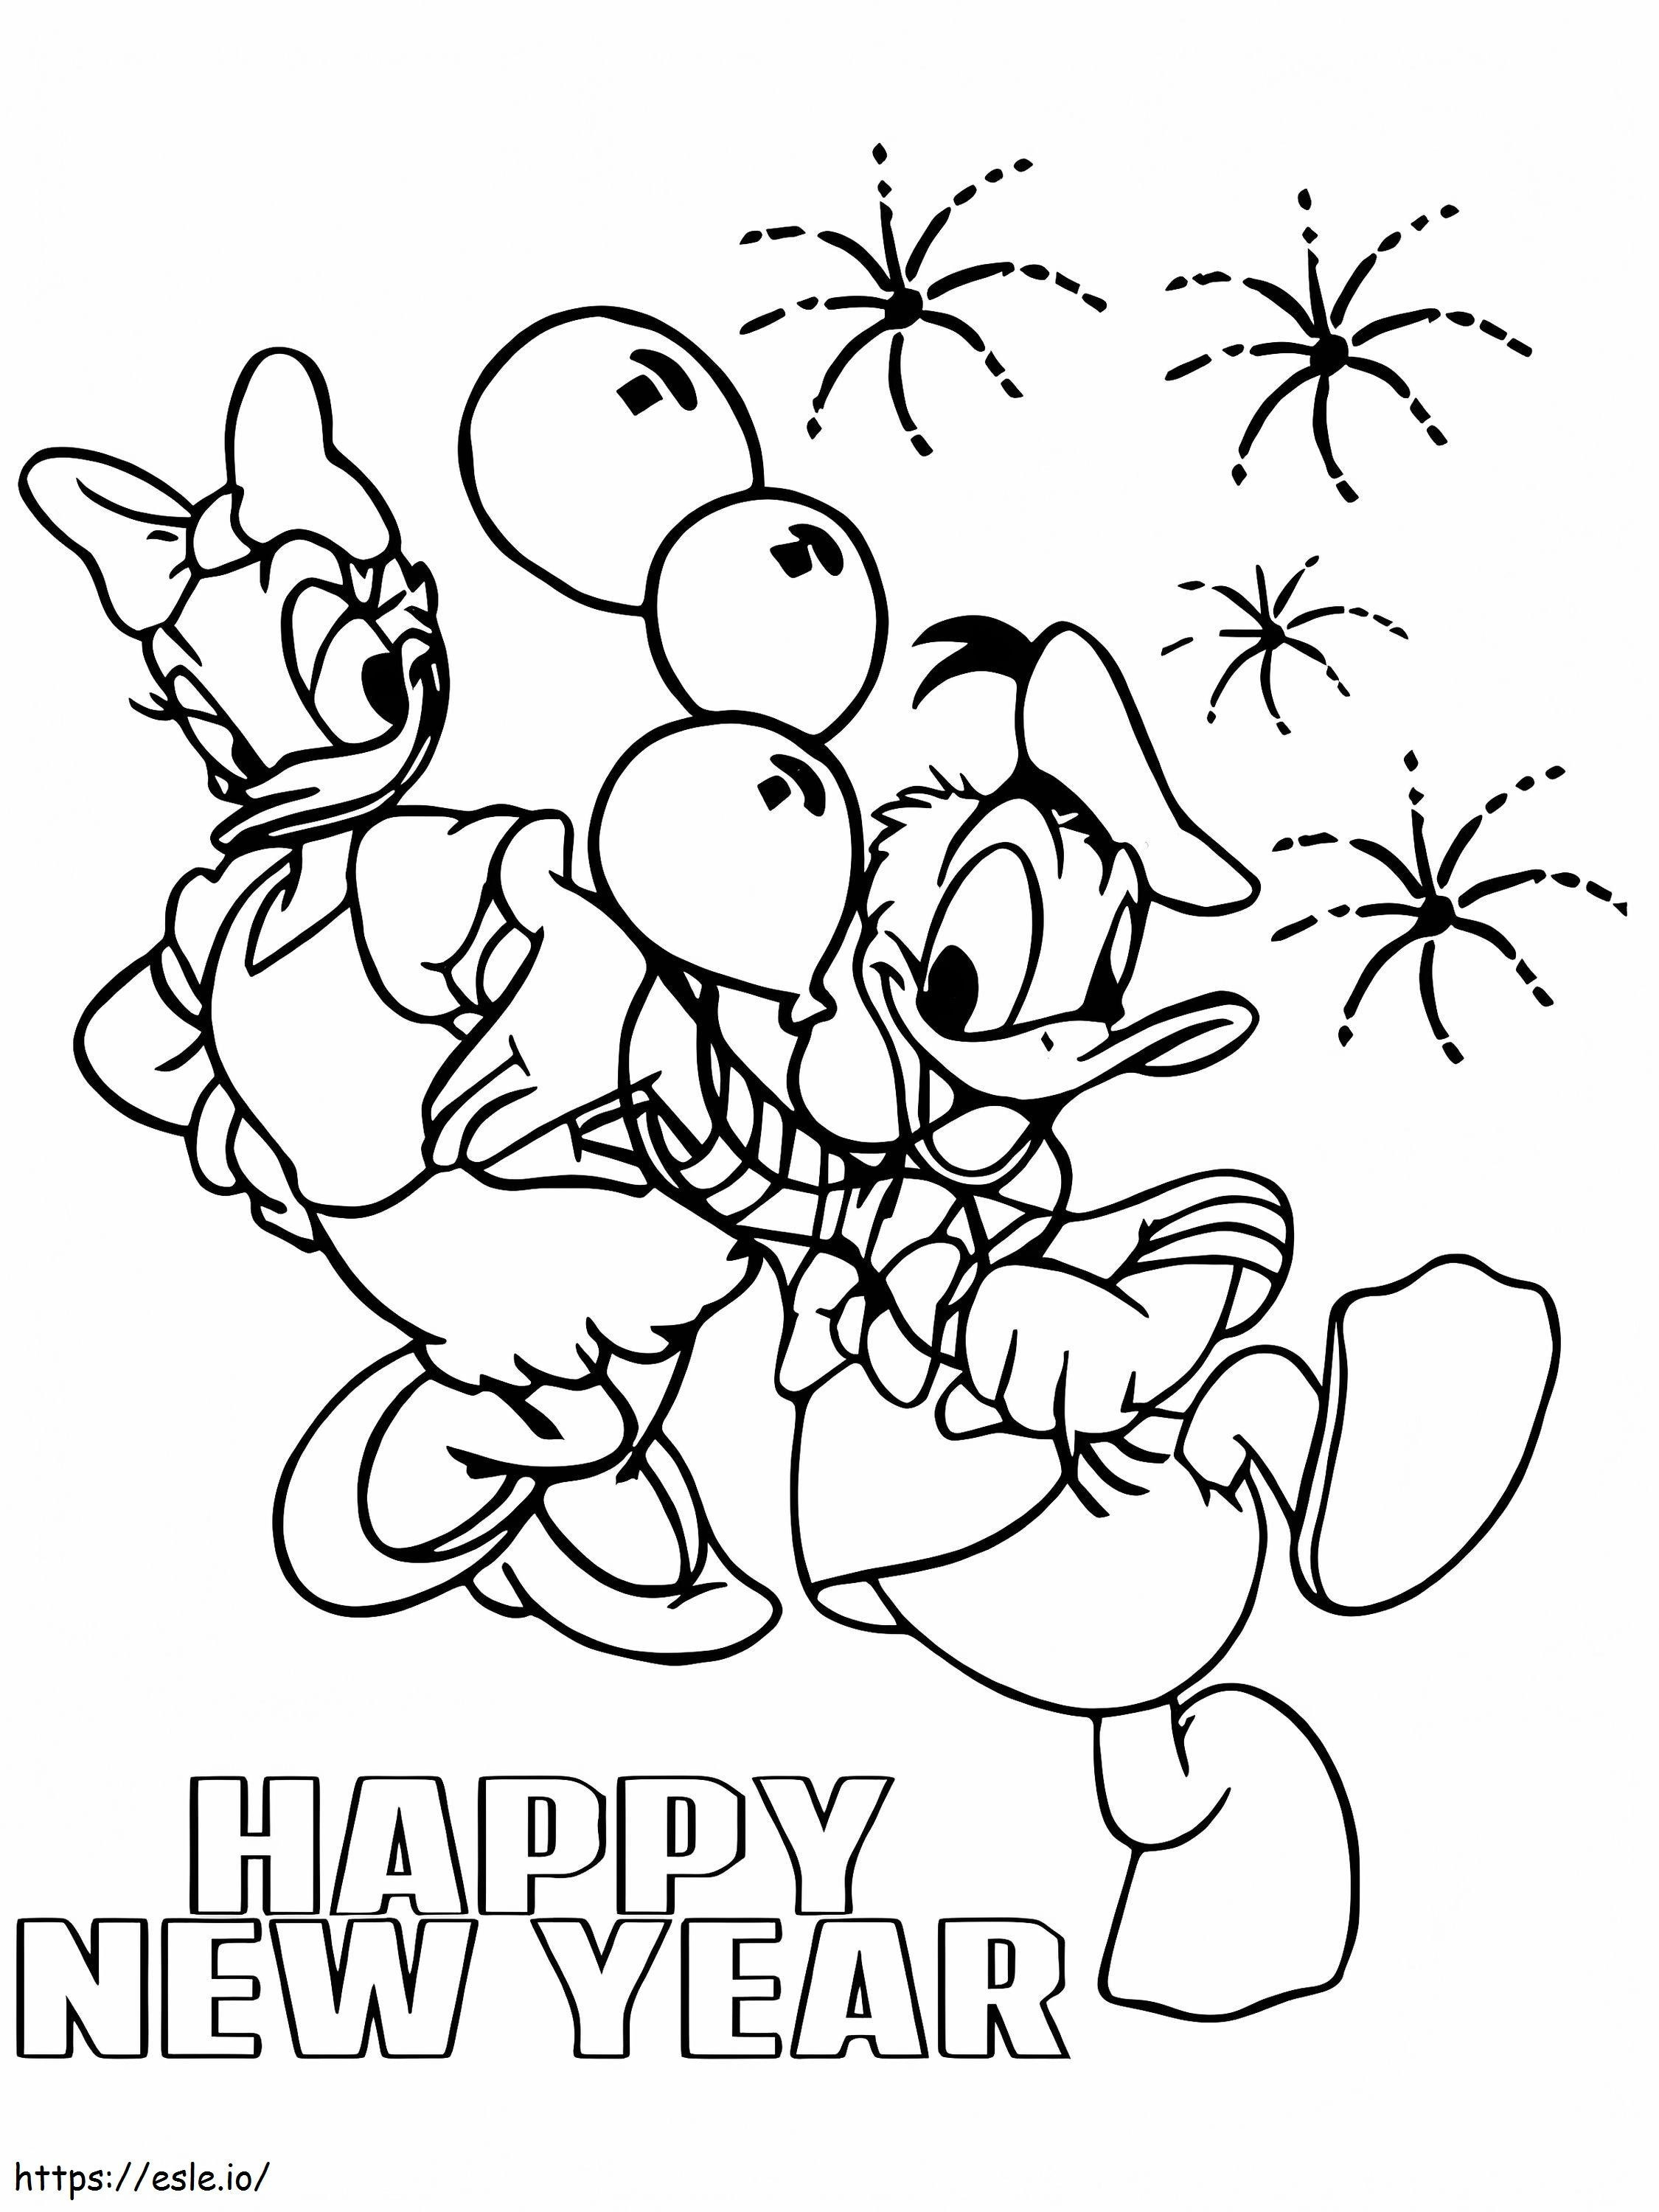 Daisy ve Donald Duck Yeni Yılınız Kutlu Olsun Boyama Sayfası boyama